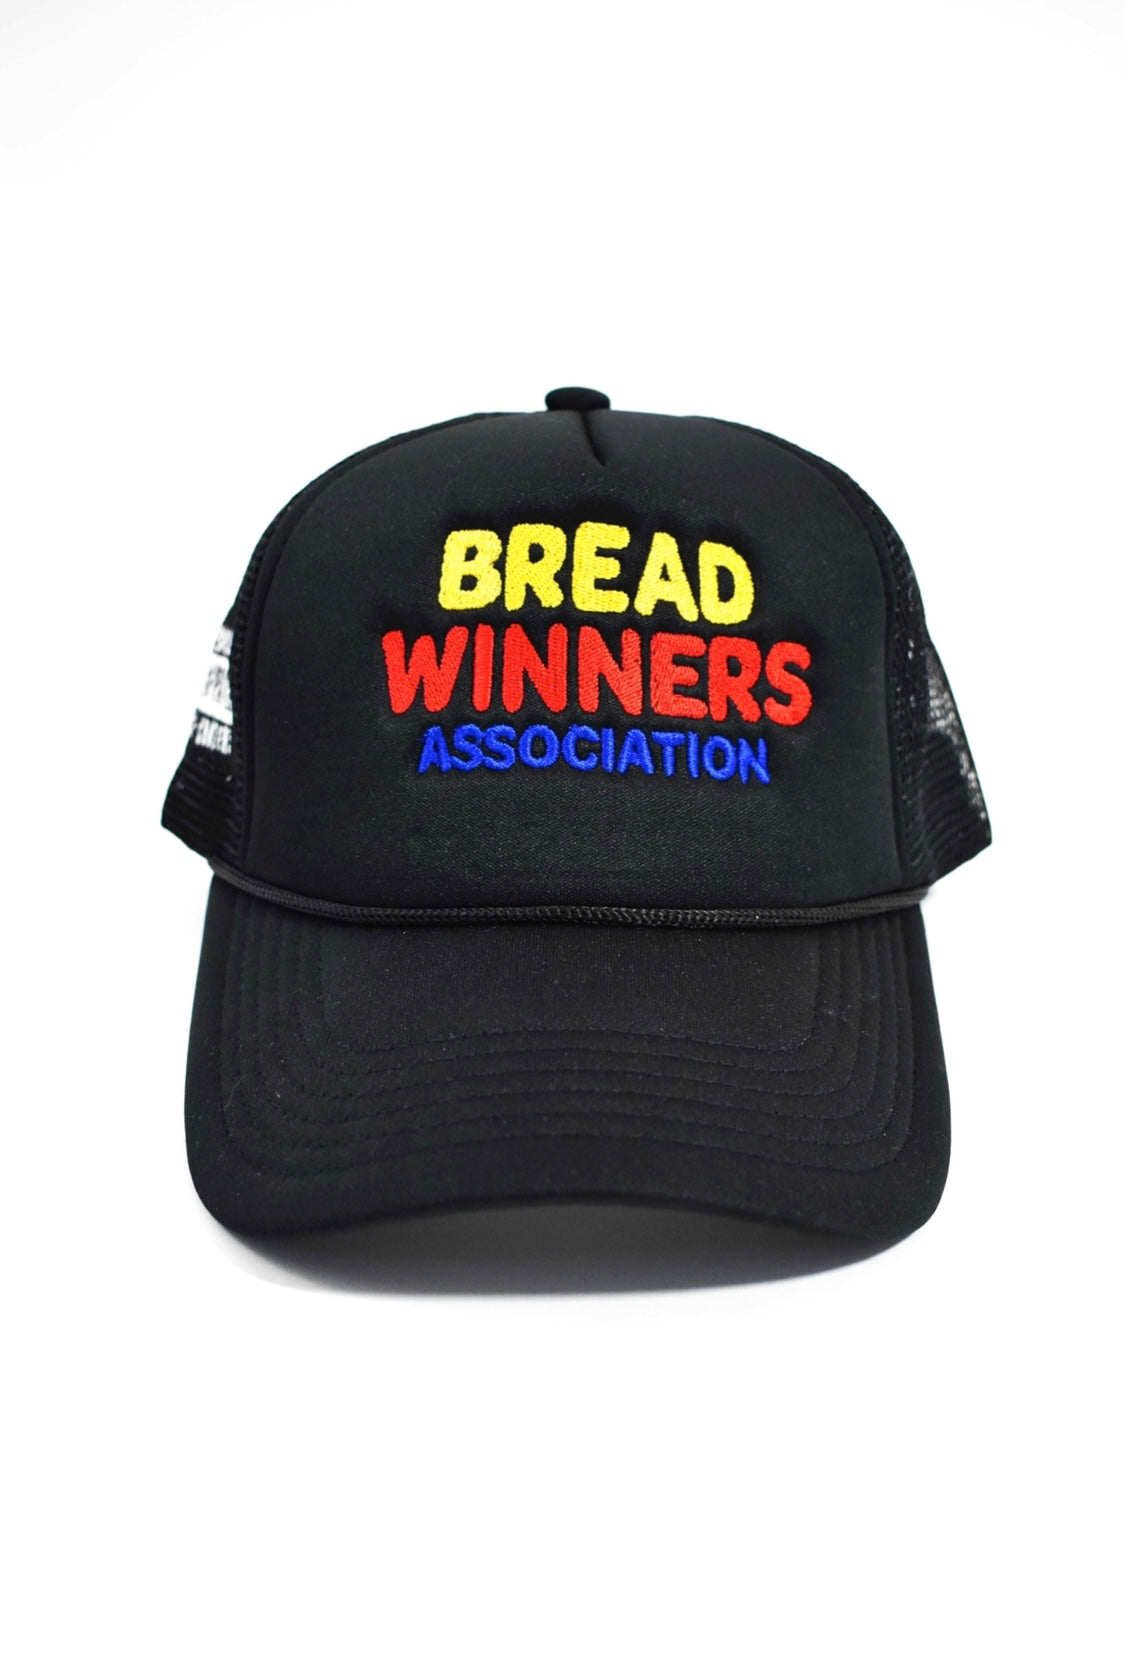 Bread Winner Trucker Hat